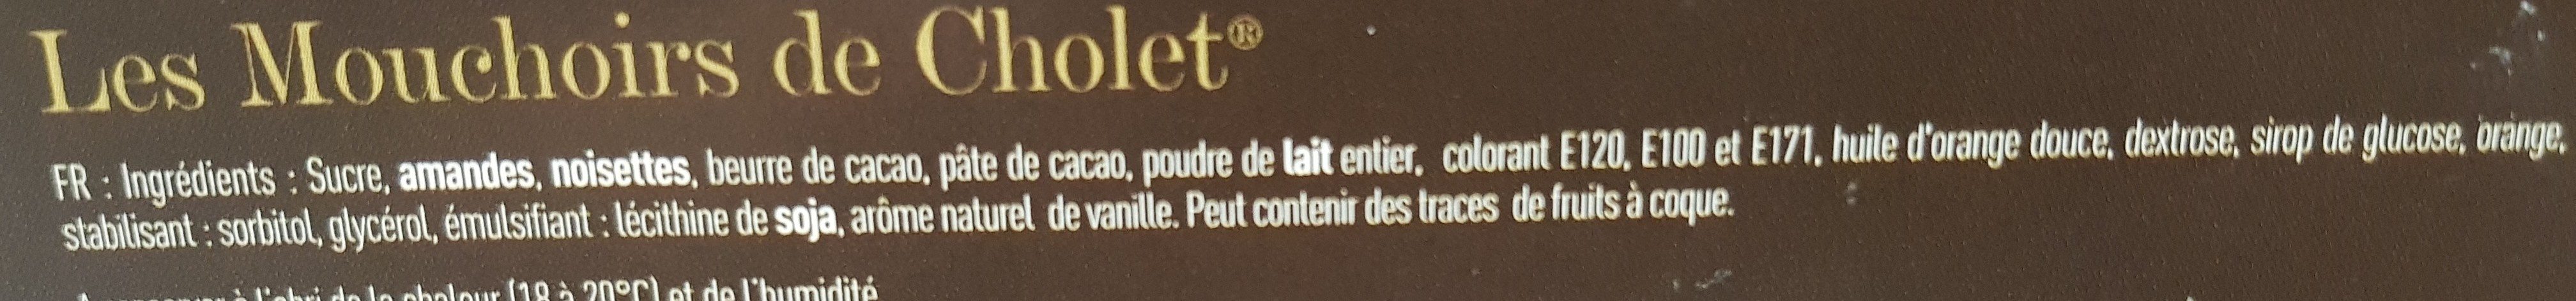 Les mouchoirs de Cholet - Ingredients - fr